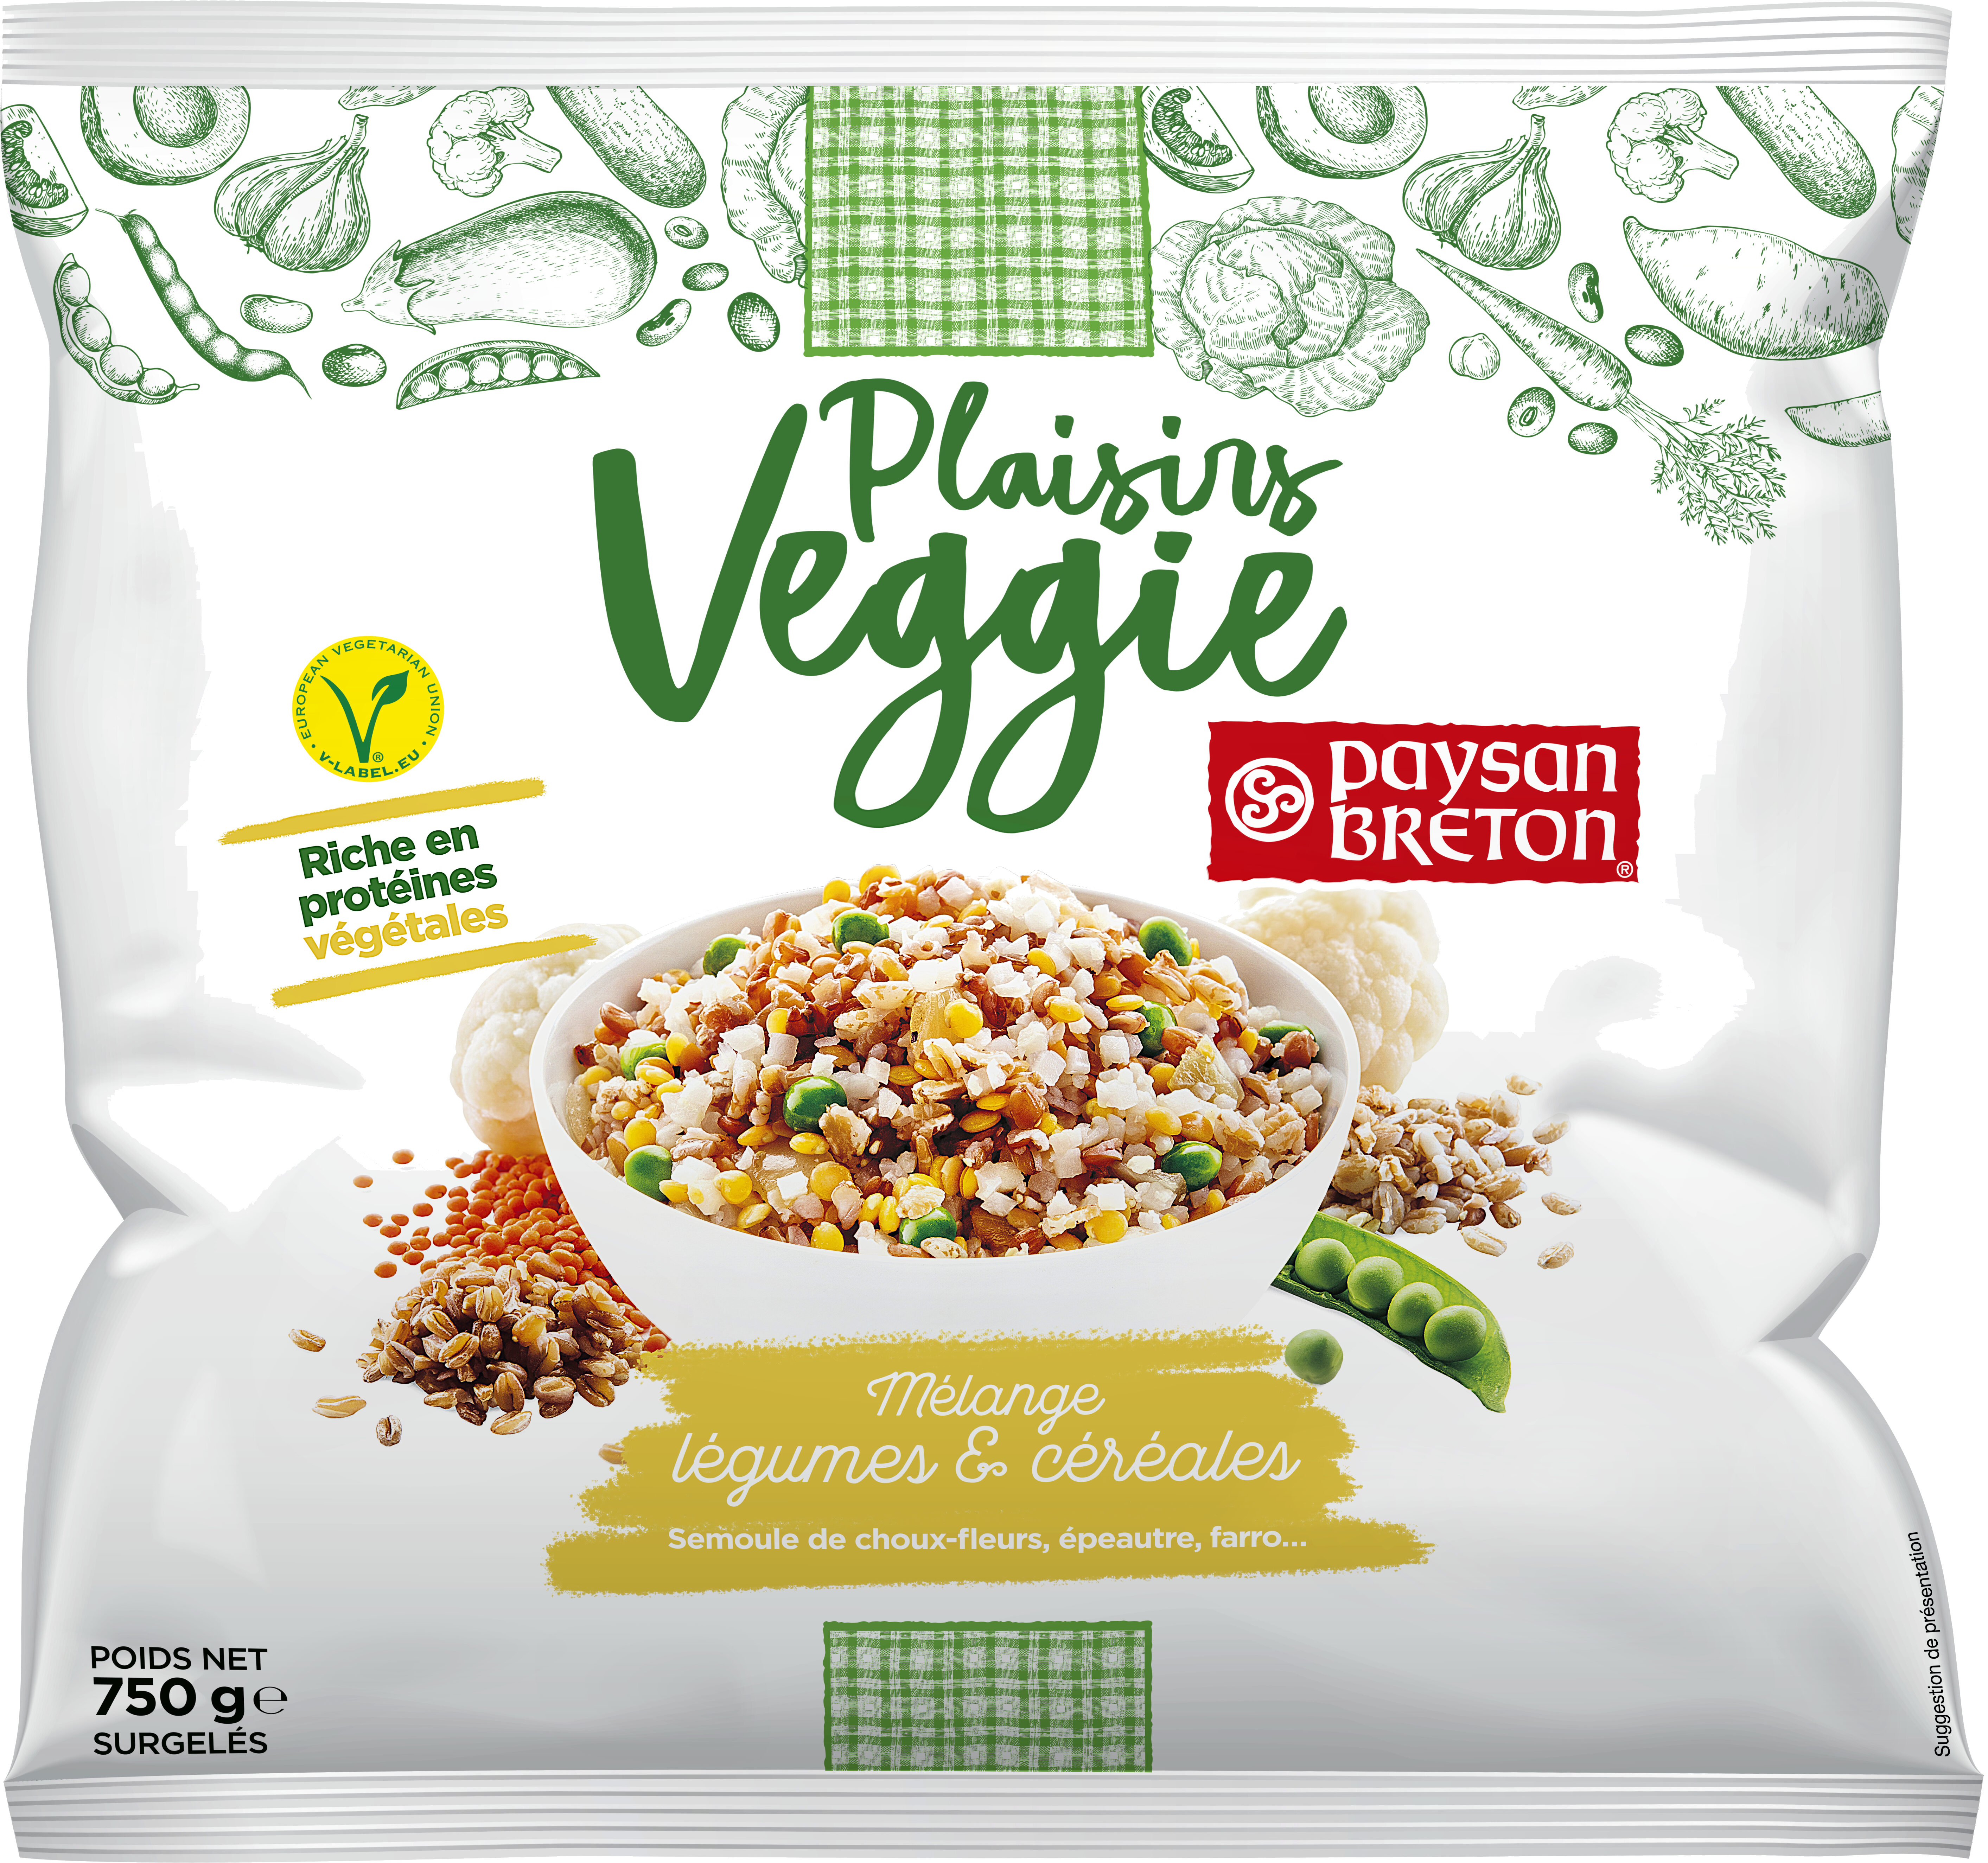 Plaisirs Veggie - Mélange légumes & céréales - Product - fr